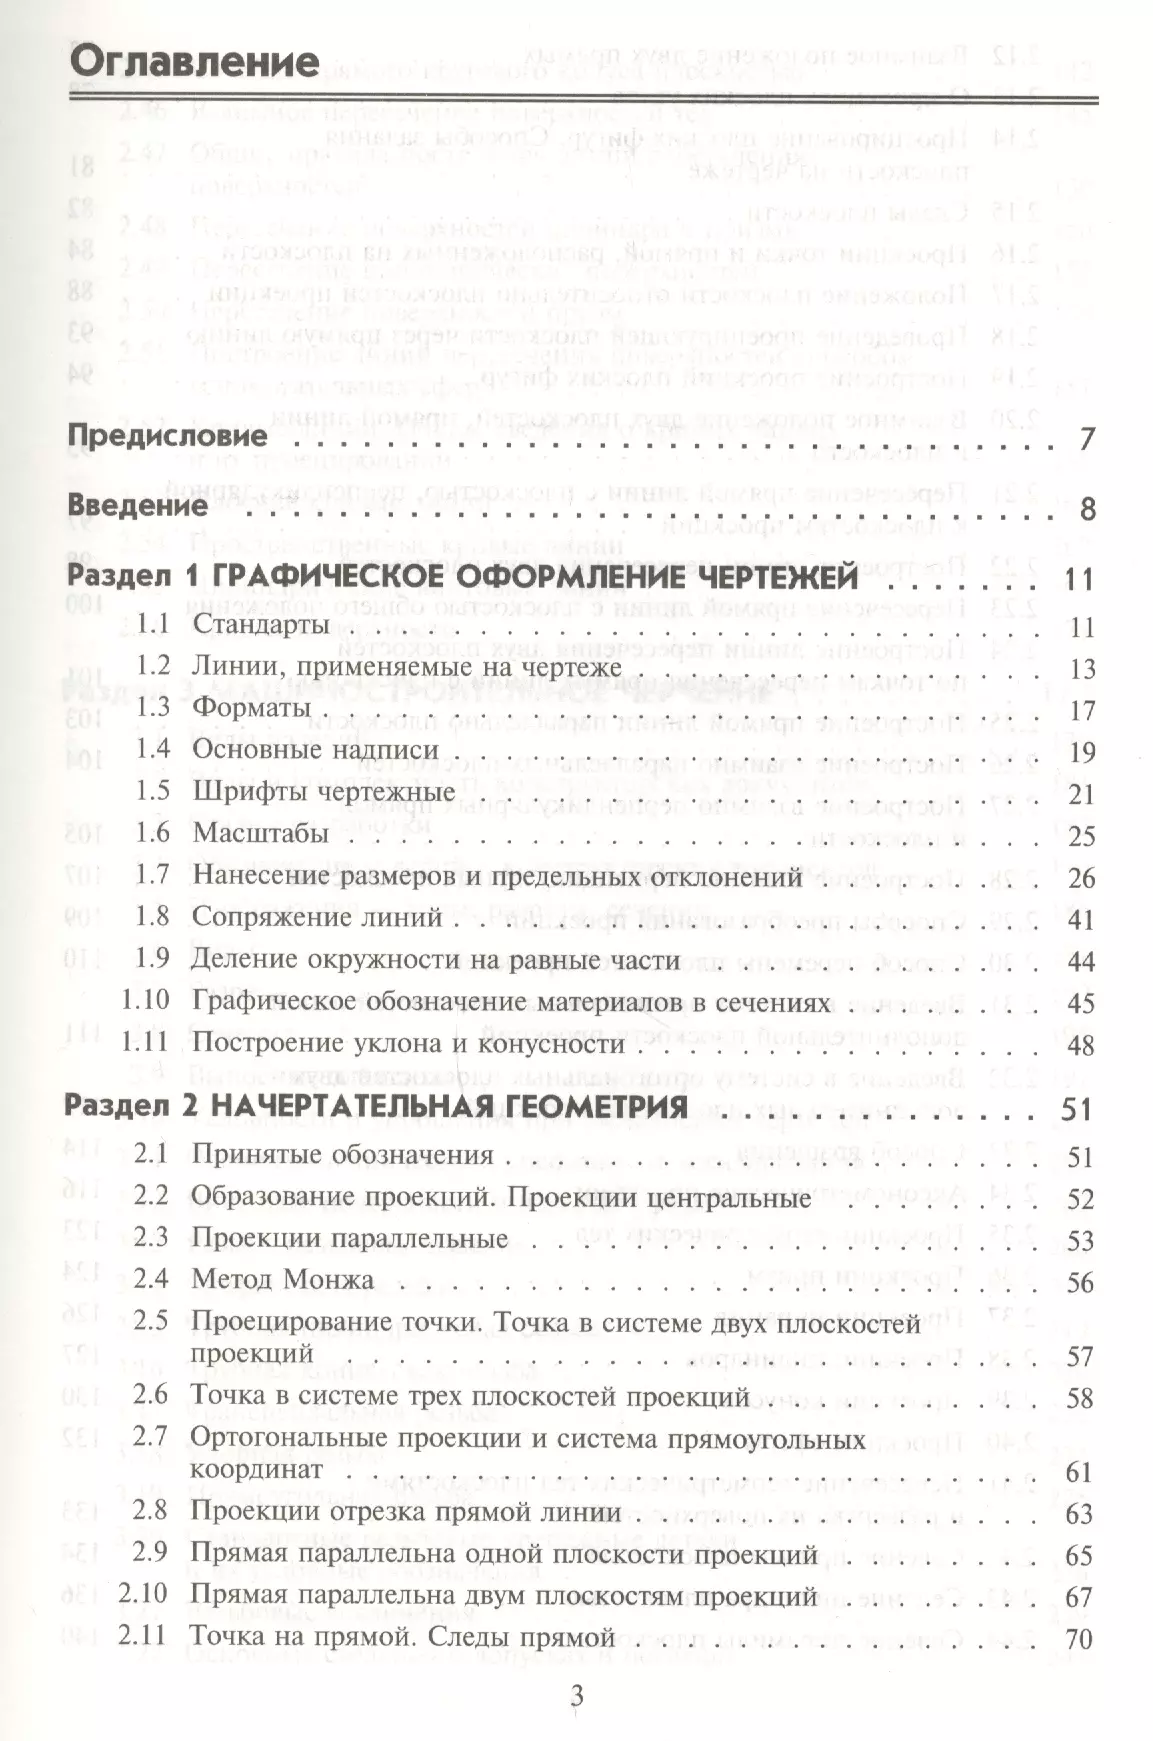 Куликов Виктор Павлович - Инженерная графика : учебник / 5-е изд.